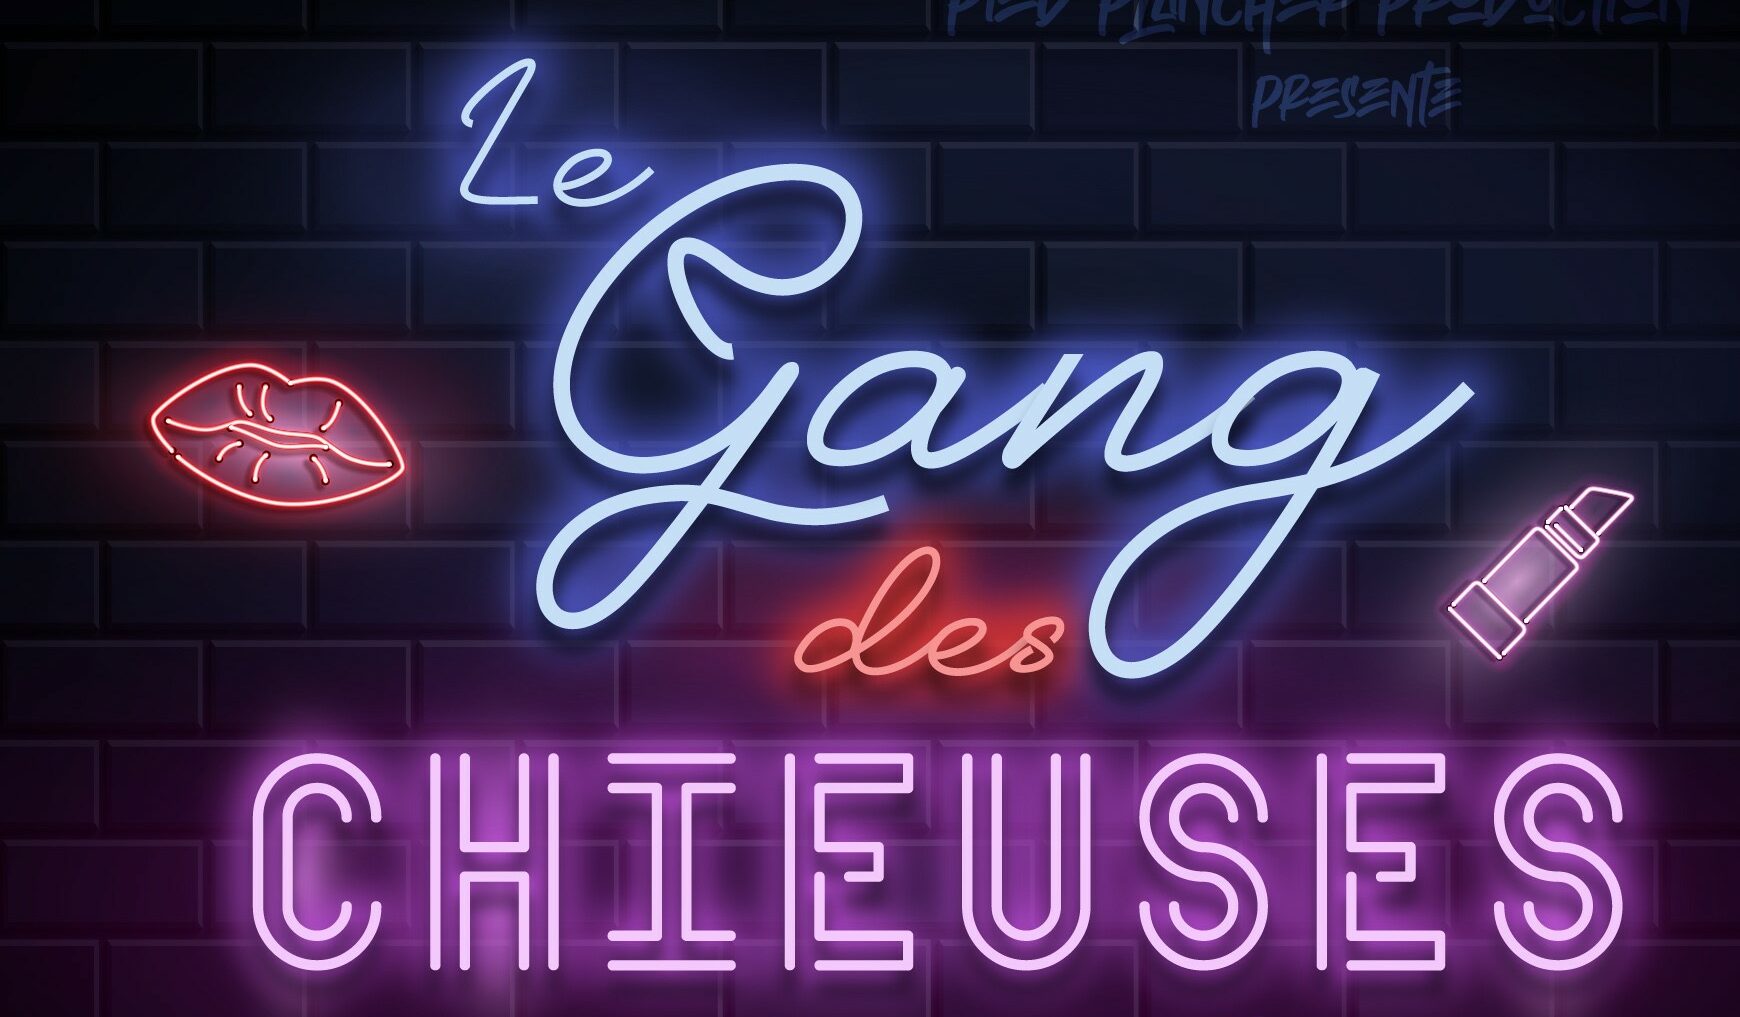 LE GANG DES CHIEUSE